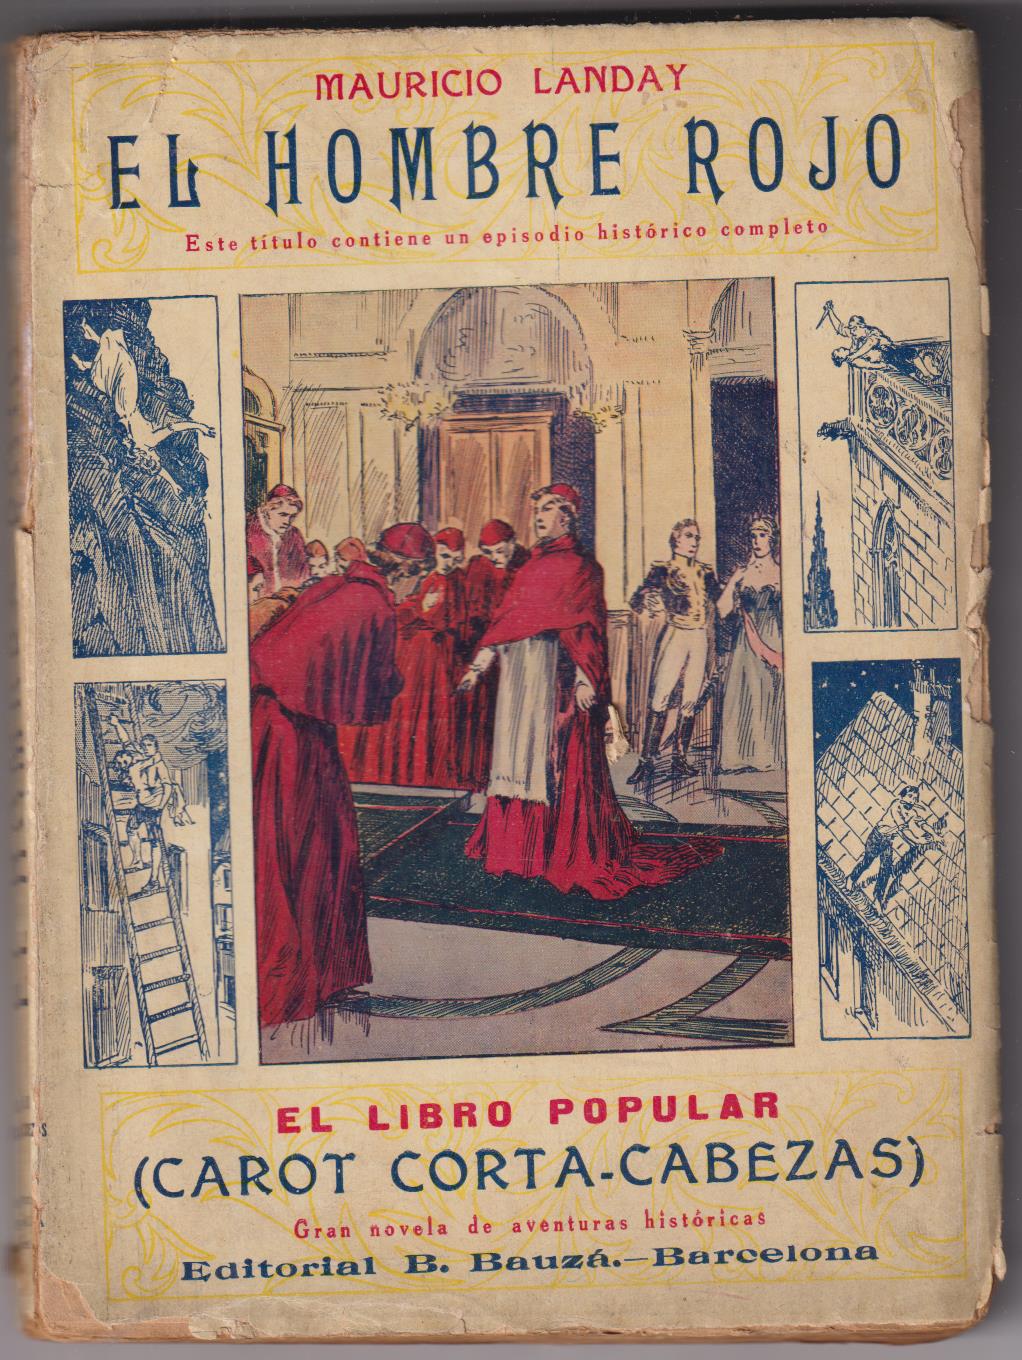 El Libro Popular nº 16. Mauricio Landay. El Hombre Rojo. Editorial B. Bouzá, 1927